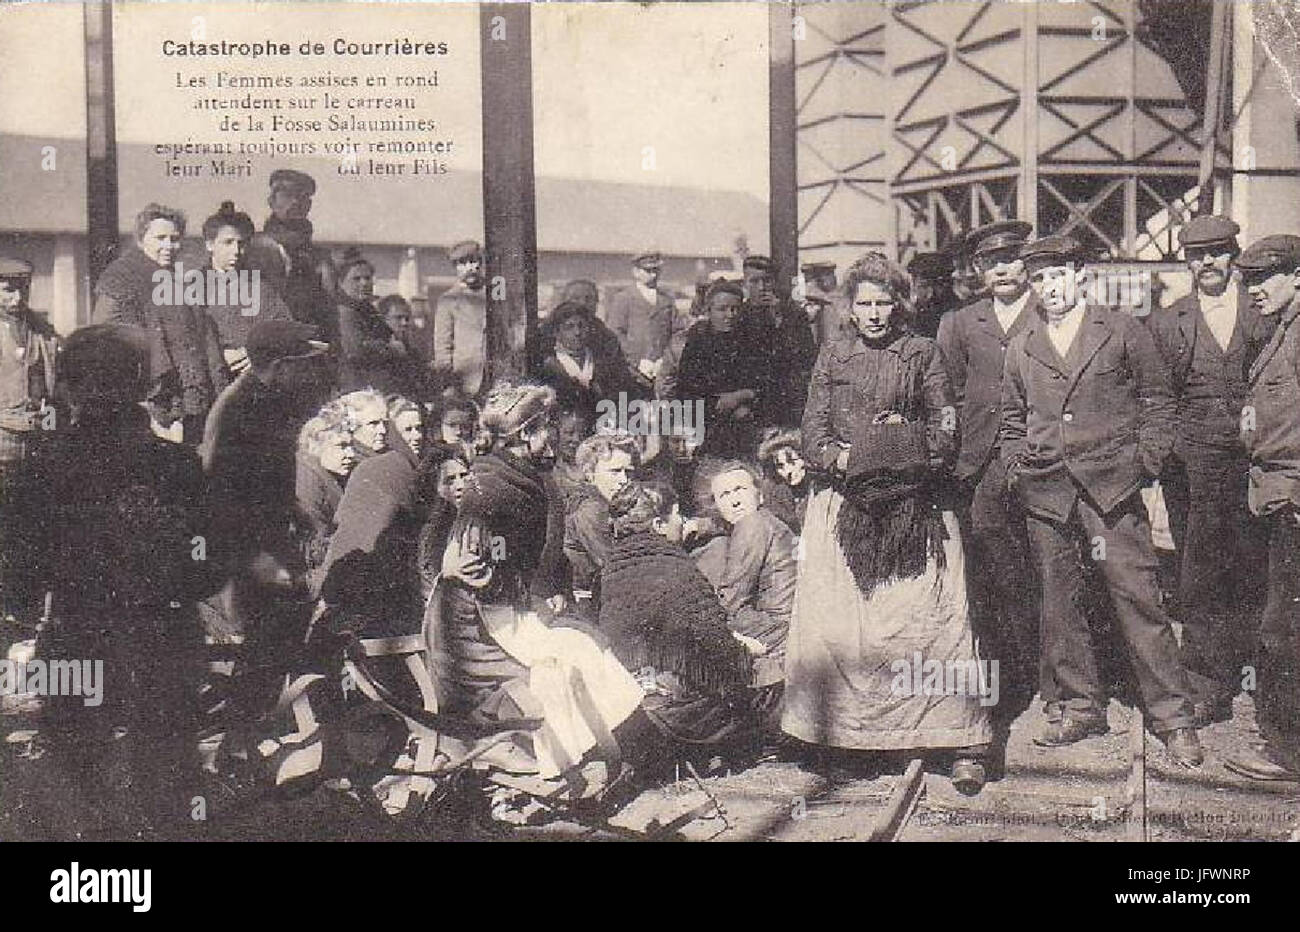 Catastrophe de Courrières - Les Femmes assises en rond attendent sur le carreau de la Fosse de Sallaumines Photo Stock - Alamy